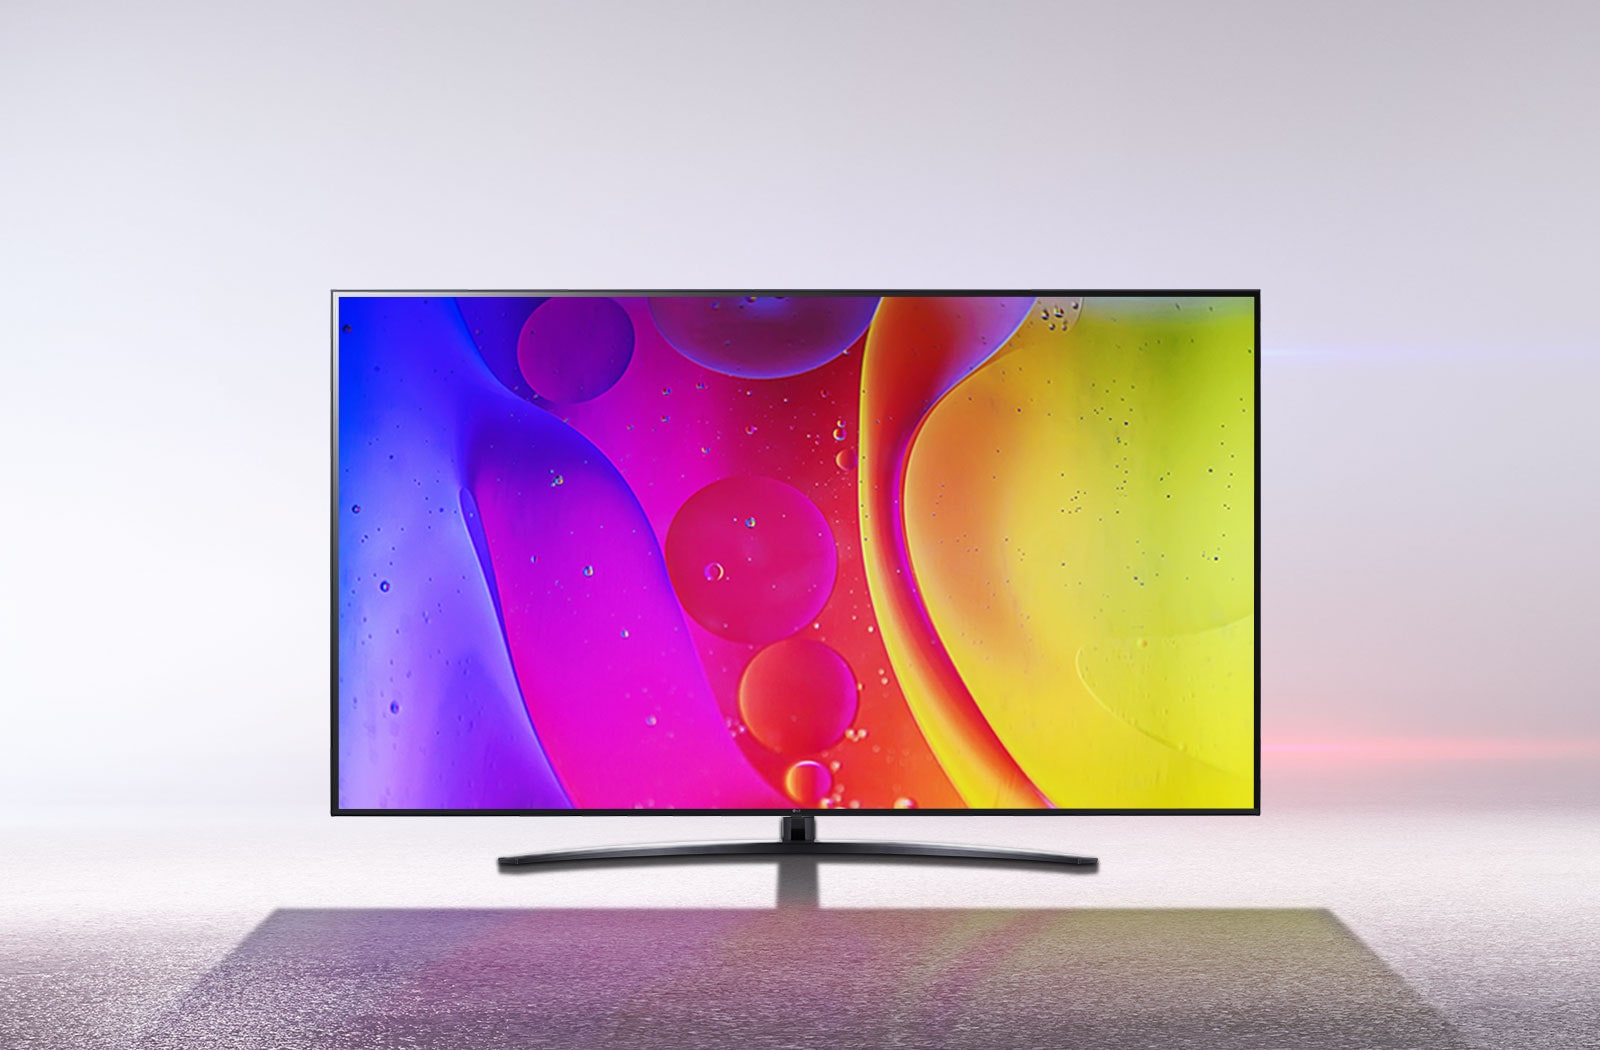 Un téléviseur dans une pièce d'un blanc éclatant affiche des couleurs vives et hypnotiques en mouvement sur l'écran.